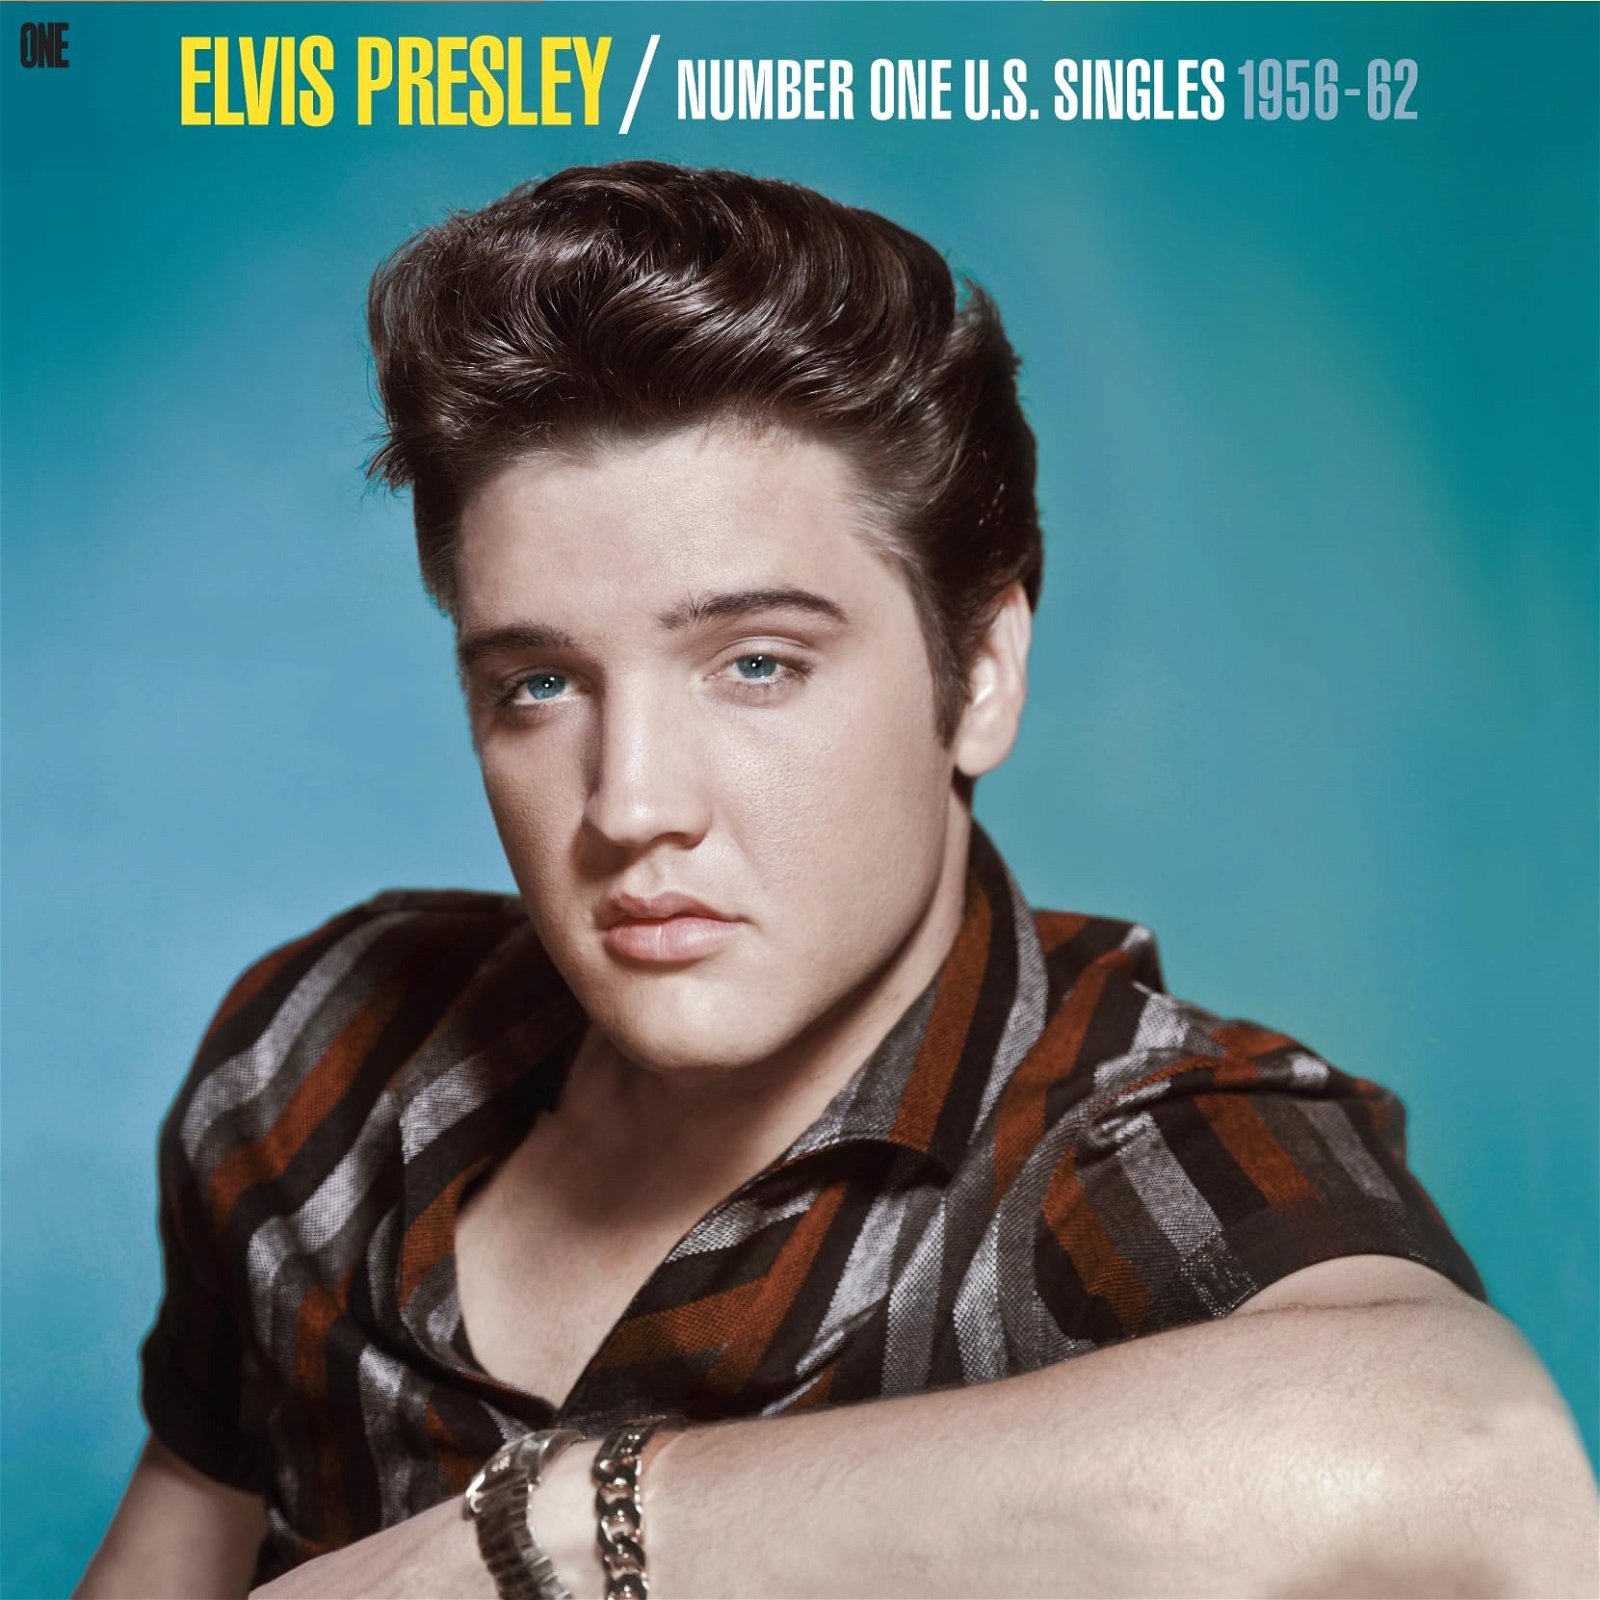 CD Shop - PRESLEY, ELVIS NUMBER ONE U.S. SINGLES 1956-62